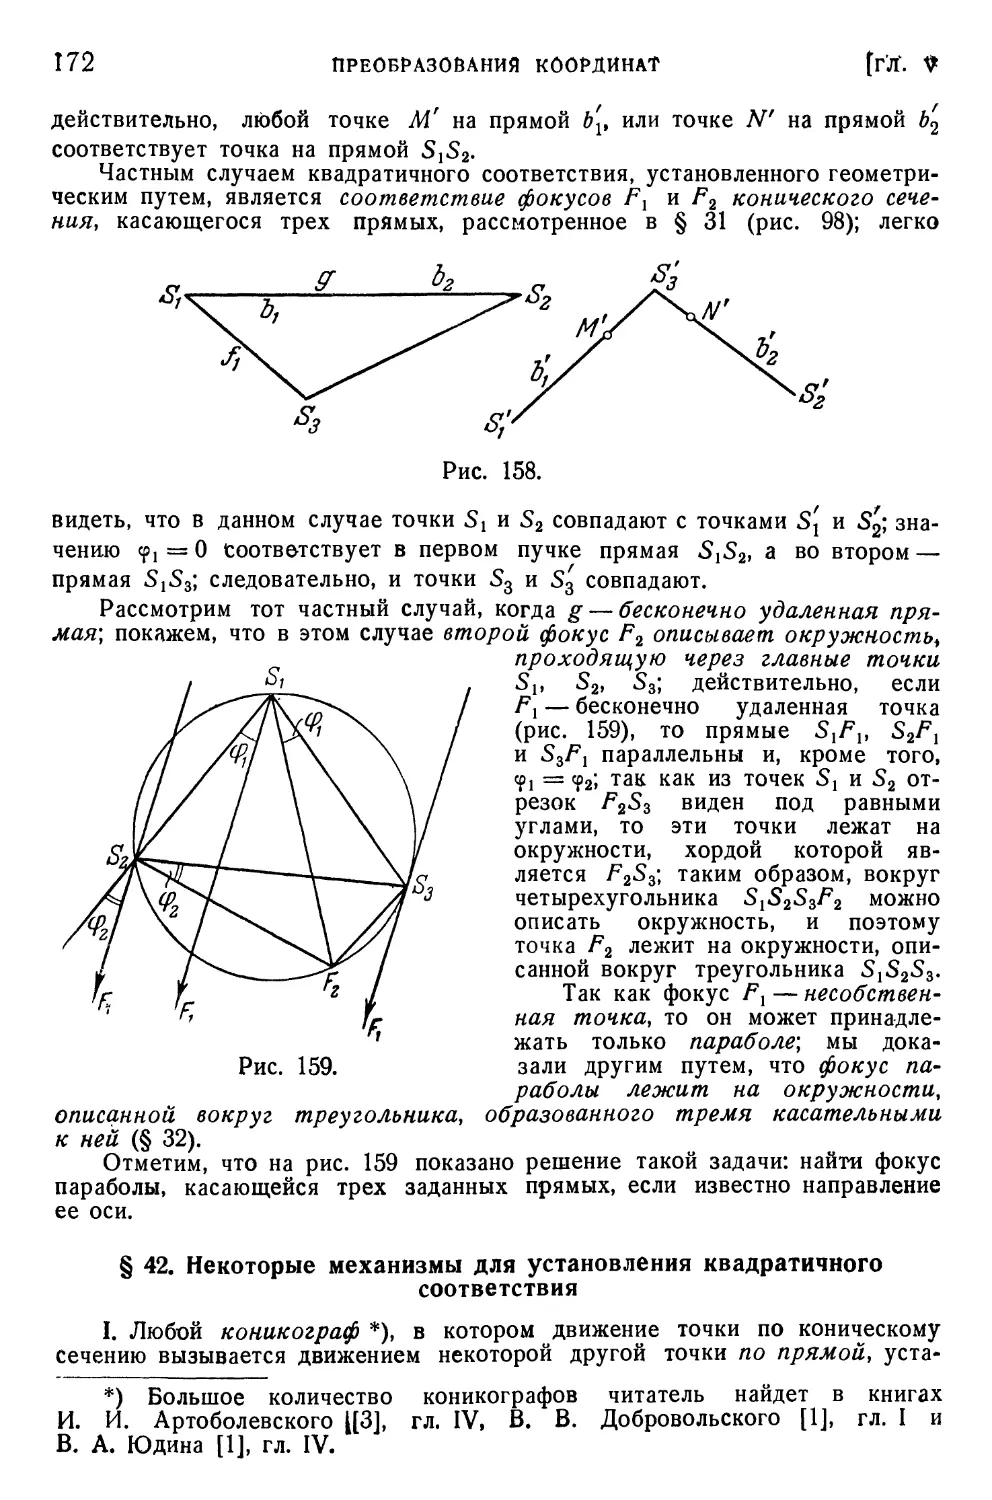 § 42. Некоторые механизмы для установления квадратичного соответствия